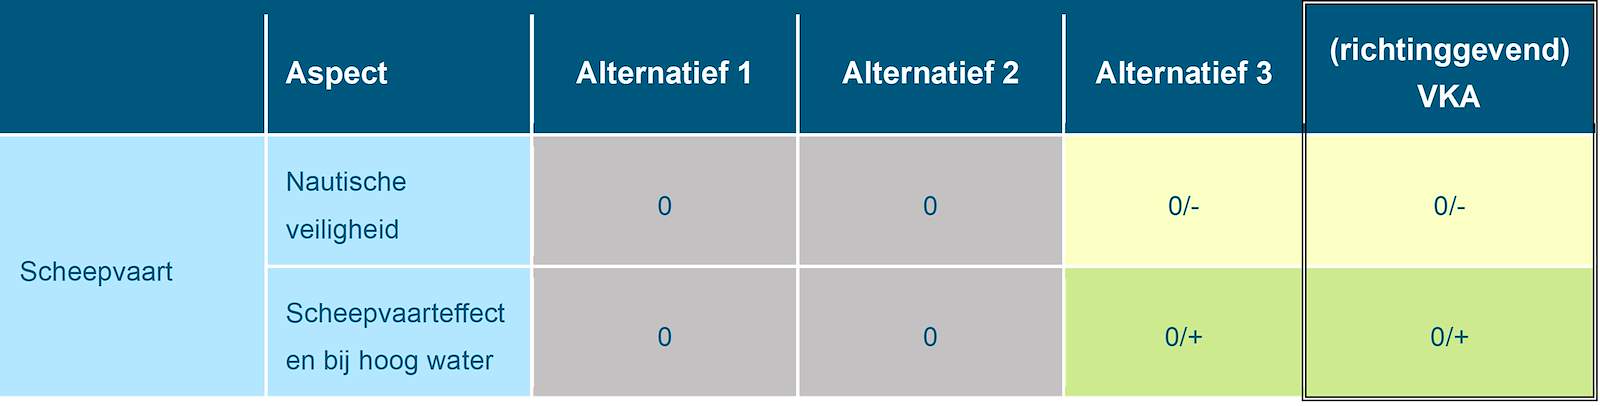 Deze tabel laat de totaalbeoordeling voor de milieueffecten van het beoordelingsaspect overige scheepvaart zien voor de Maas, voor de drie alternatieven en het richtinggevend VKA. Deze beoordeling is toegelicht in de tekst voorafgaande aan de tabel.